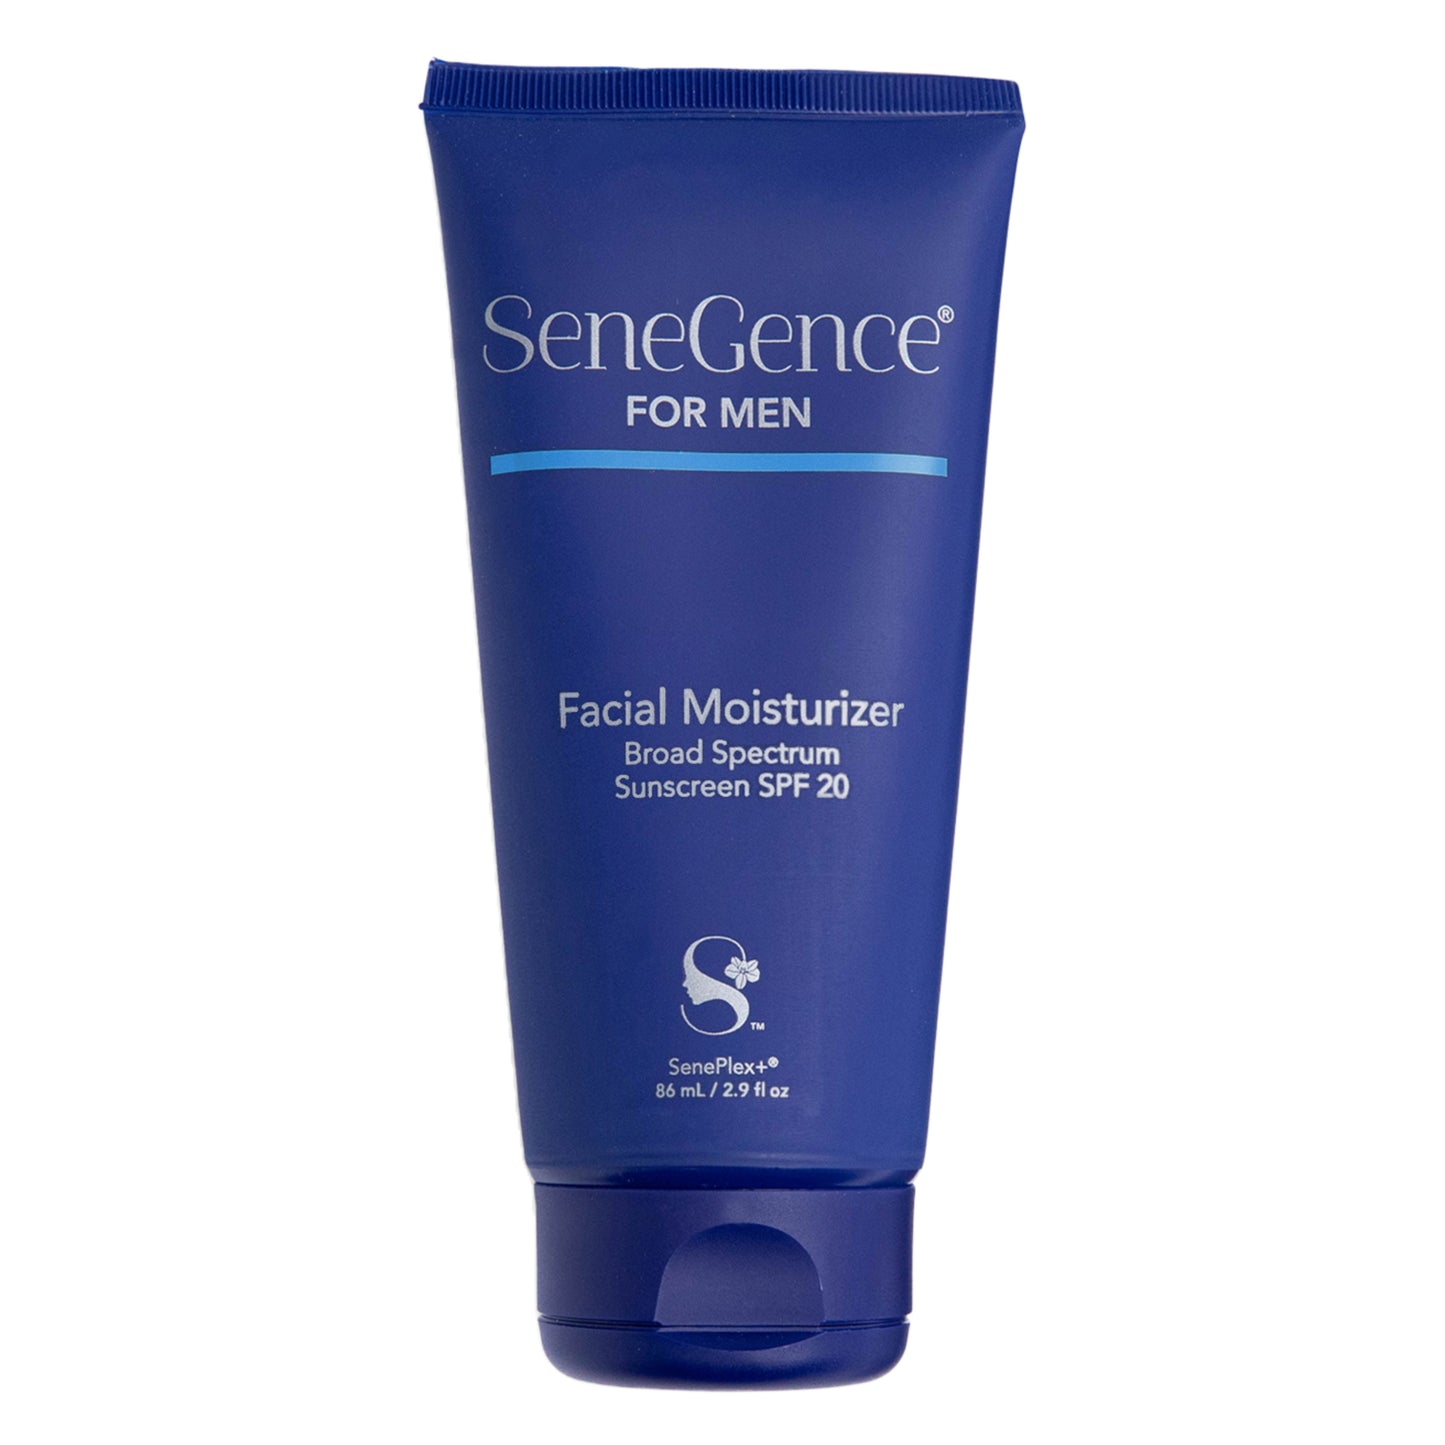 SeneGence For Men Facial Moisturizer SPF 20